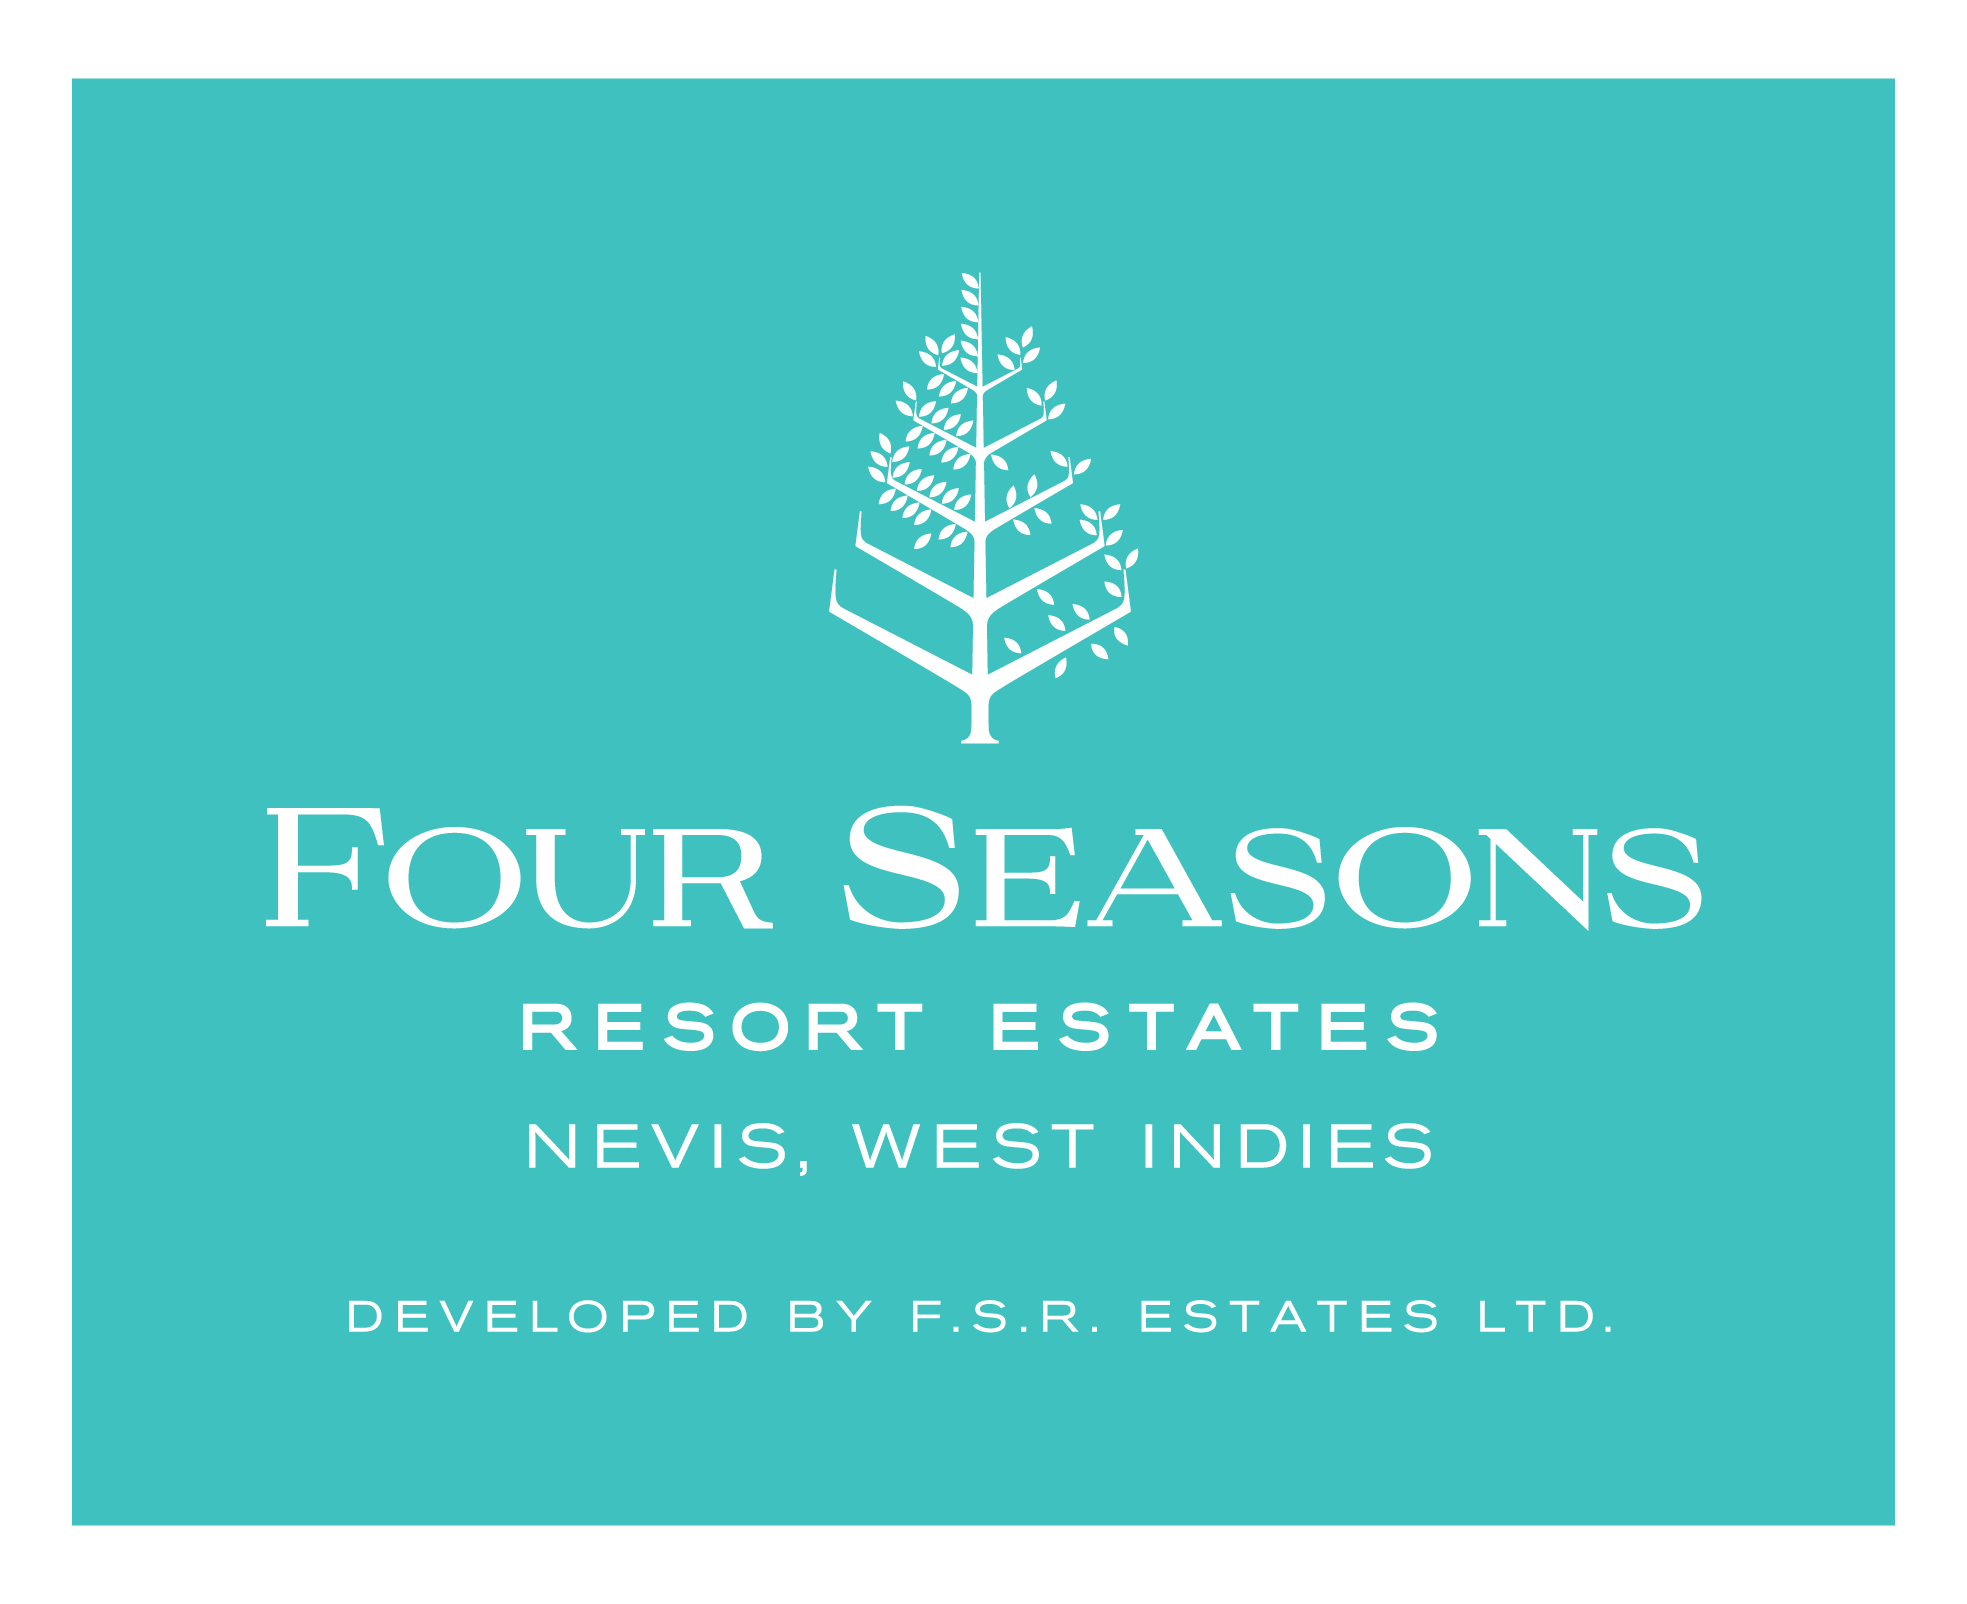 Four Seasons Resort Estates | Logo